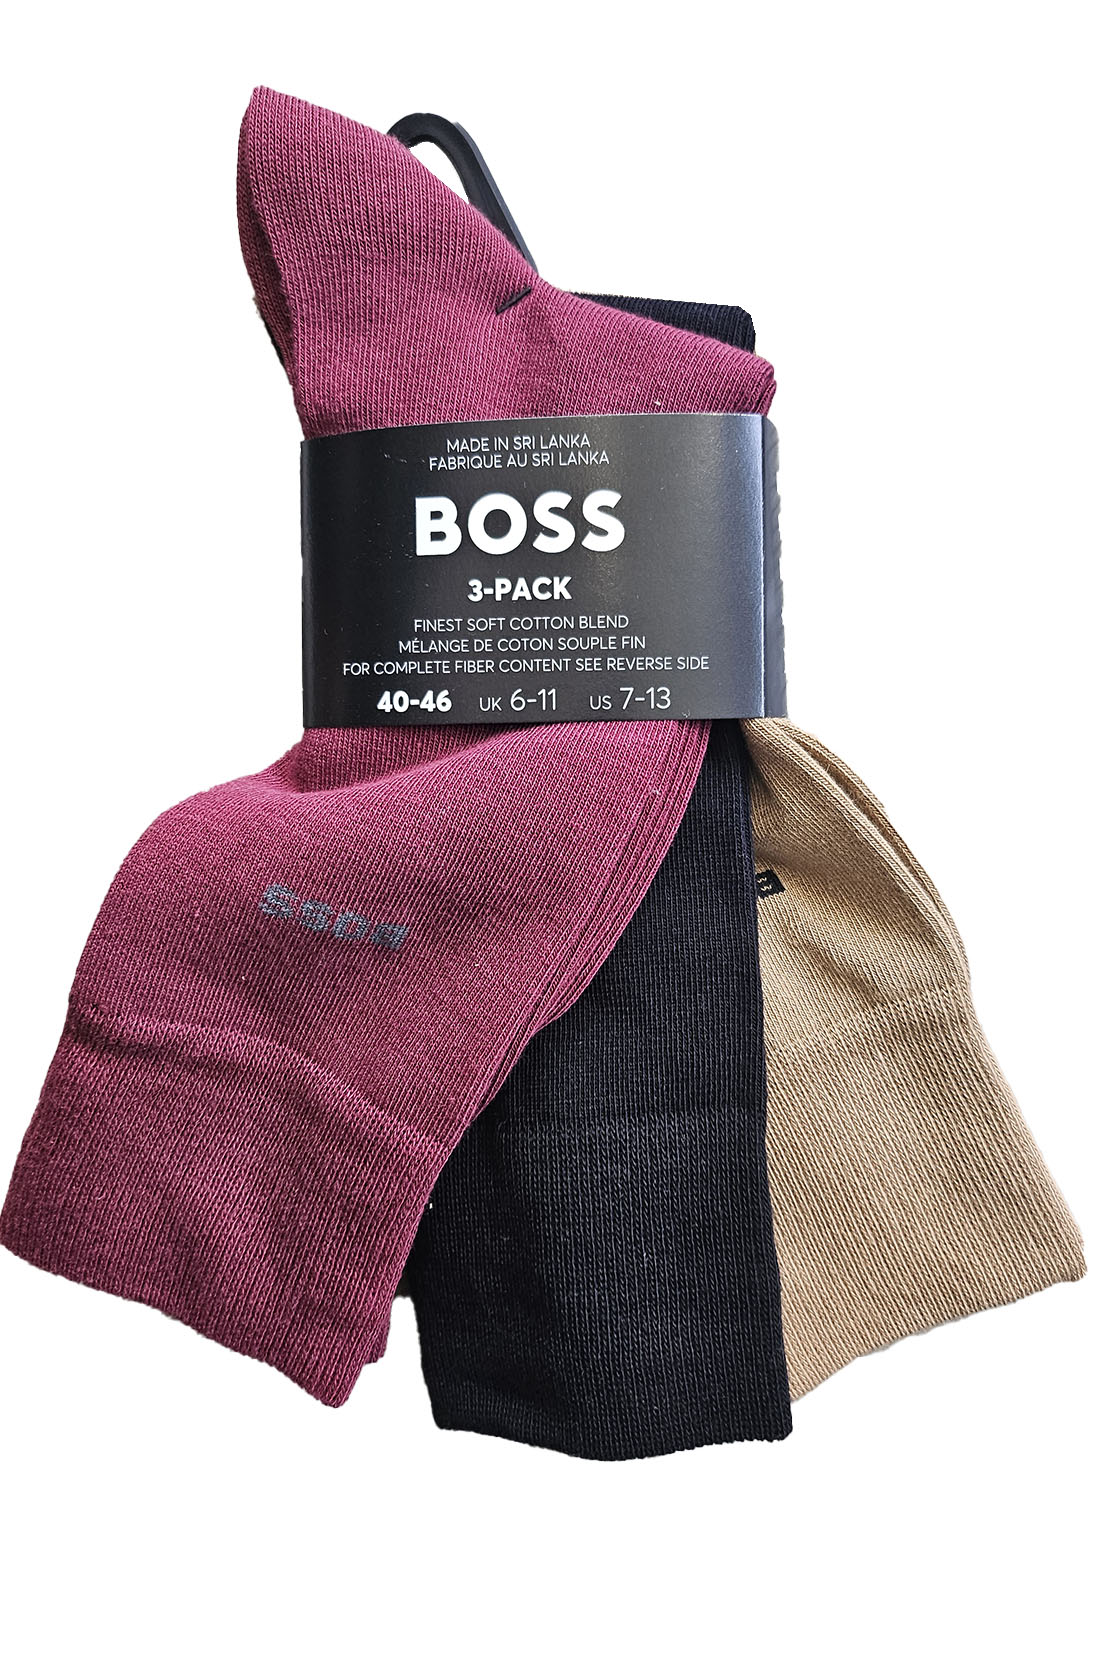 BOSS - 3 Pack Of Regular Length Cotton Blend Socks 50469366 973